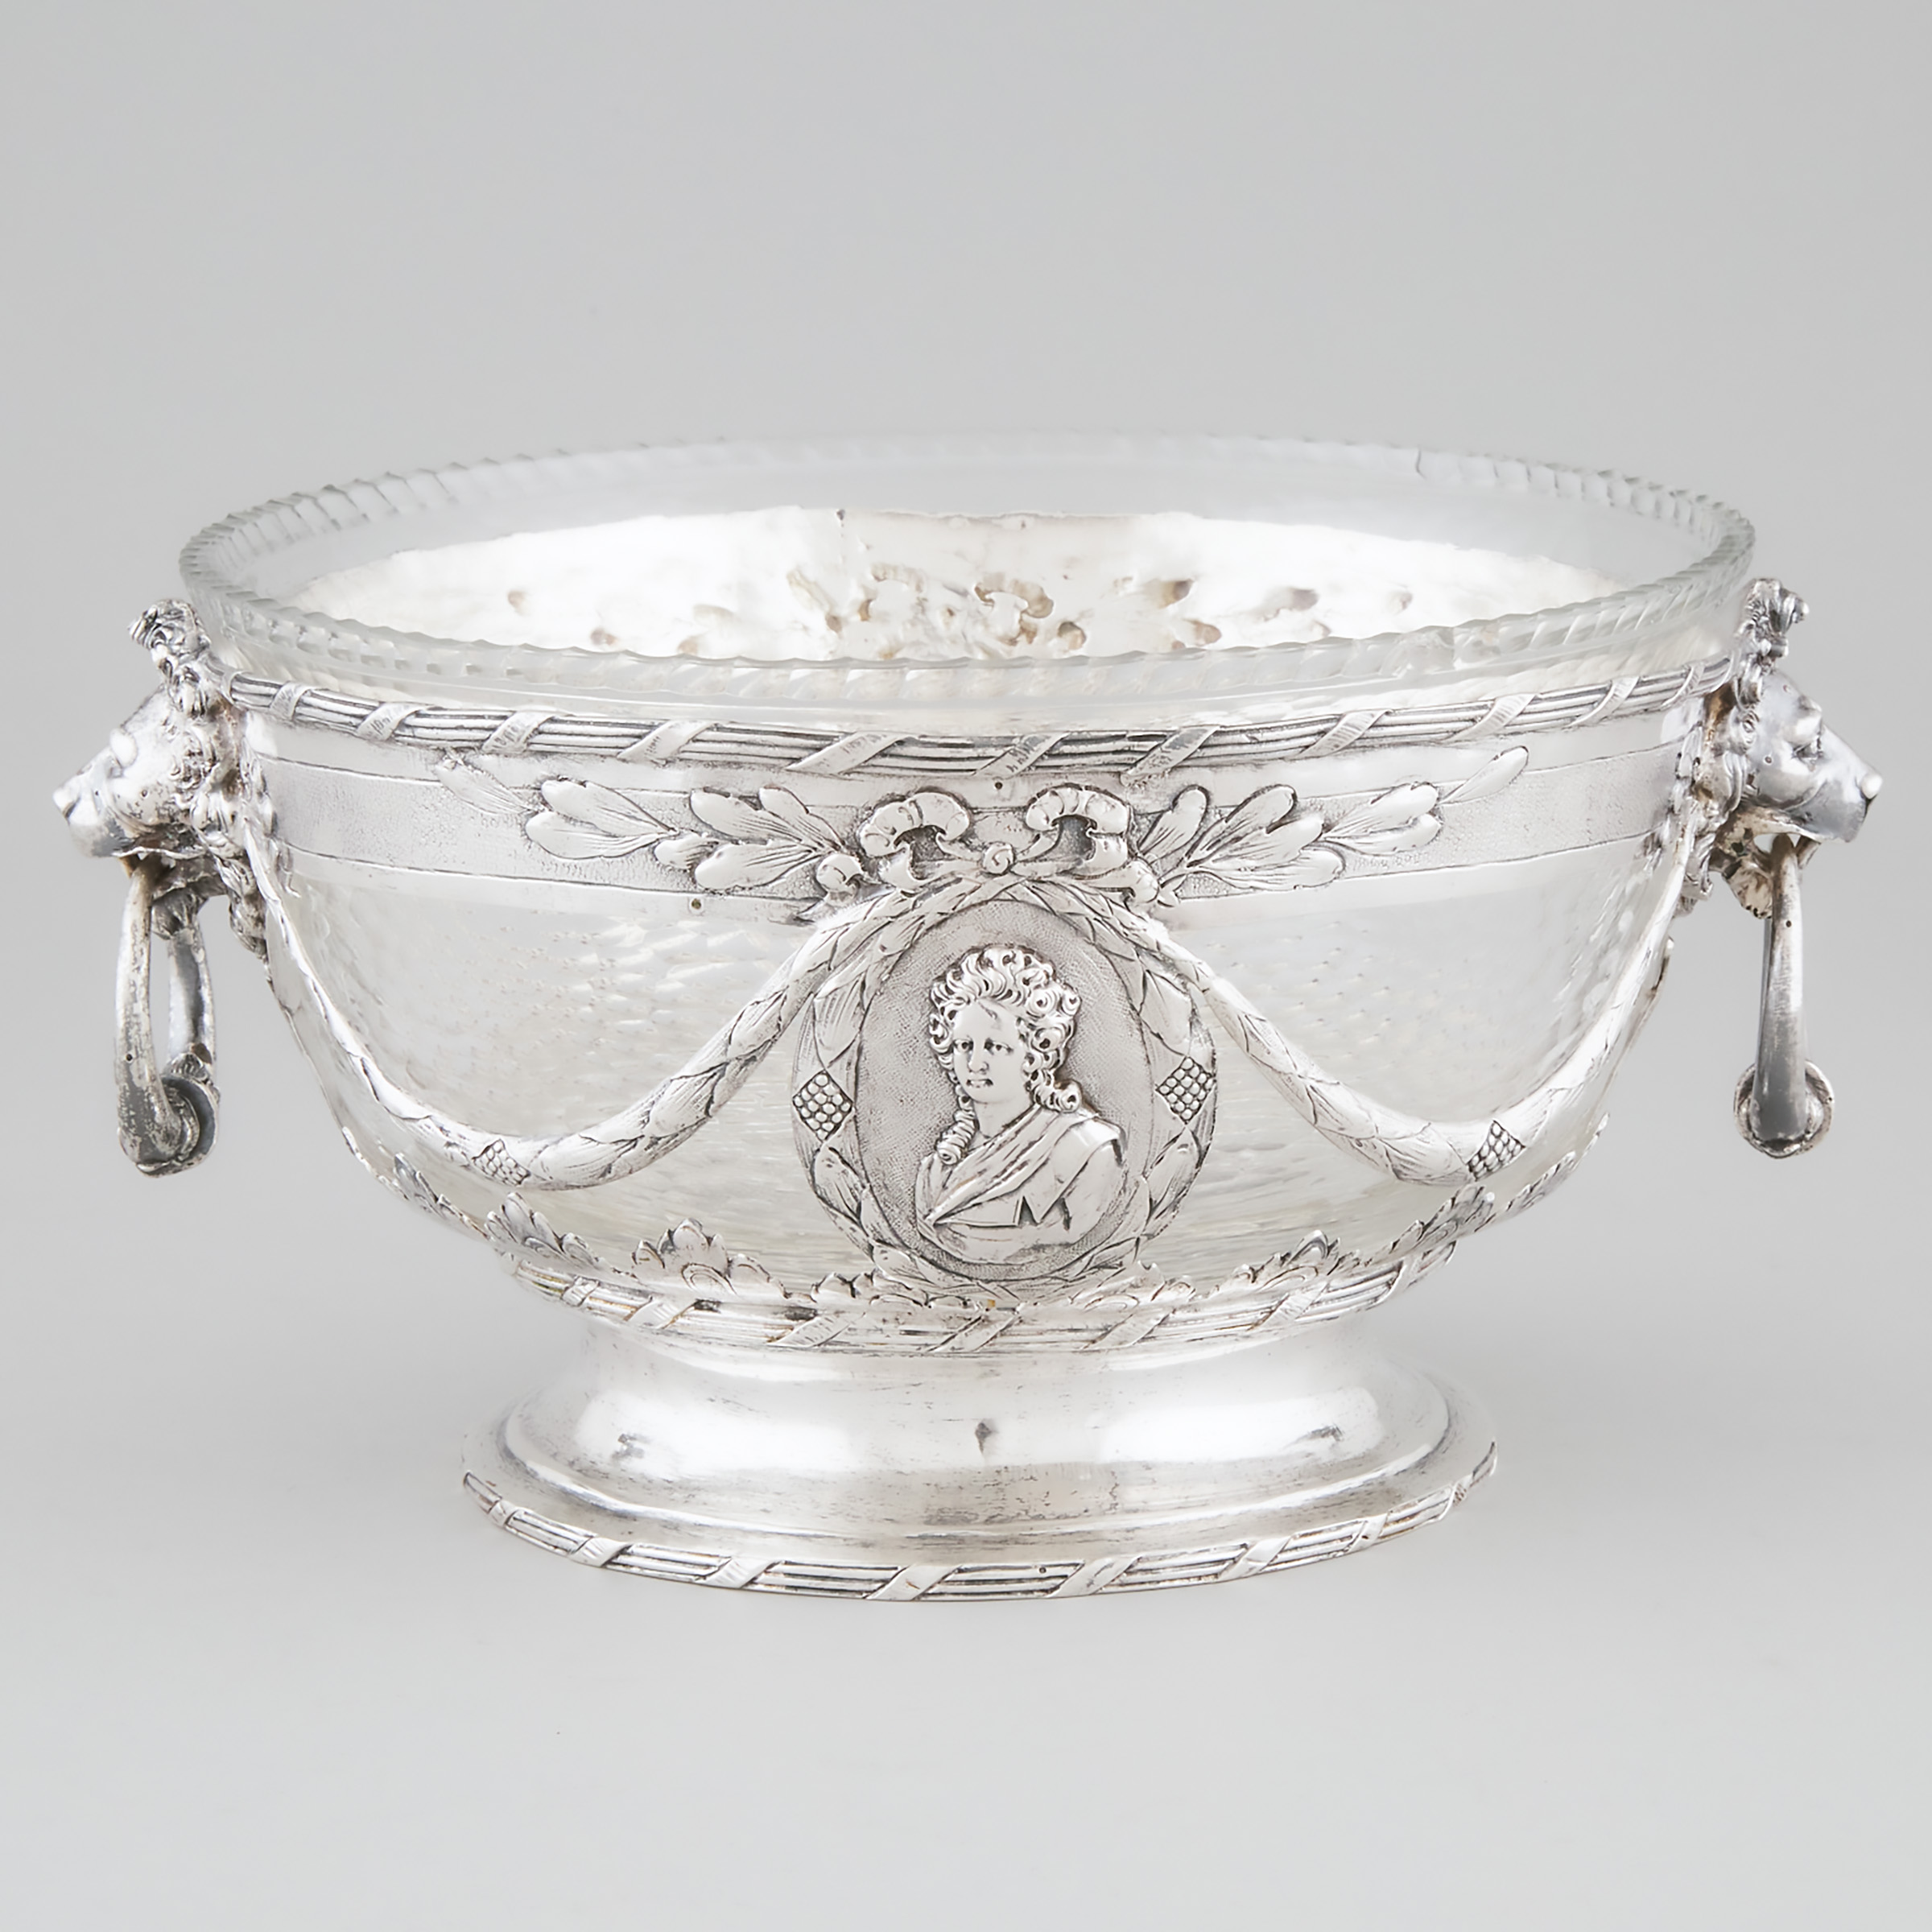 German Silver and Cut Glass Bowl, probably Hanau, c.1900